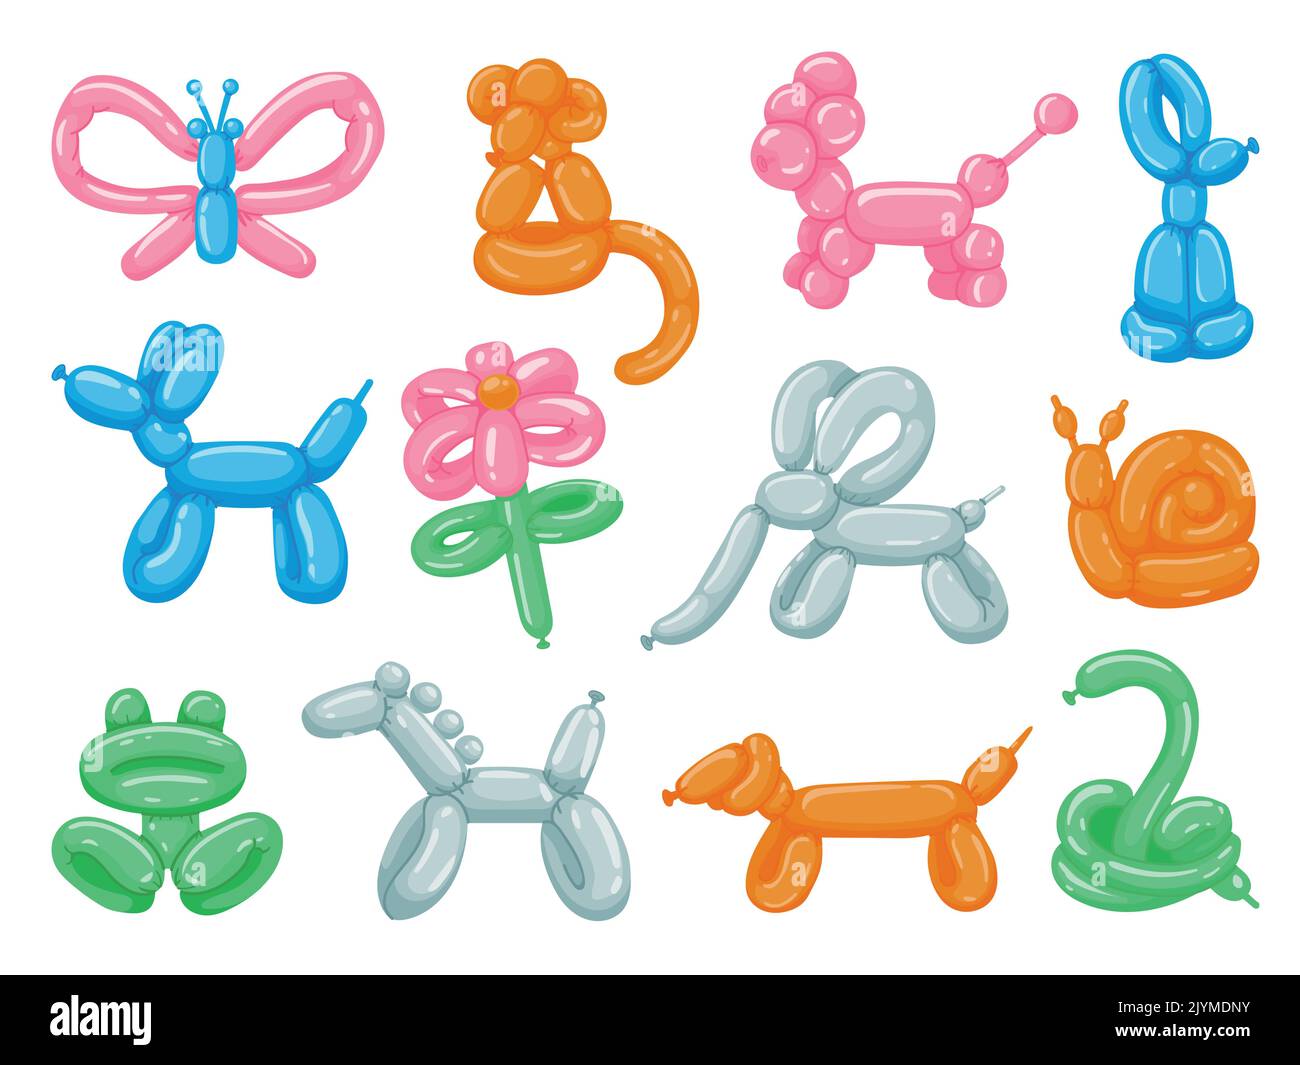 Ballontiere. Cartoon Runde Spielzeug Tiere, niedliche Party Dekoration, verschiedene Schlange Affen Pferd Hund bunte Ballons. Vektor Kinder Spielzeug Haustier Skulptur Stock Vektor